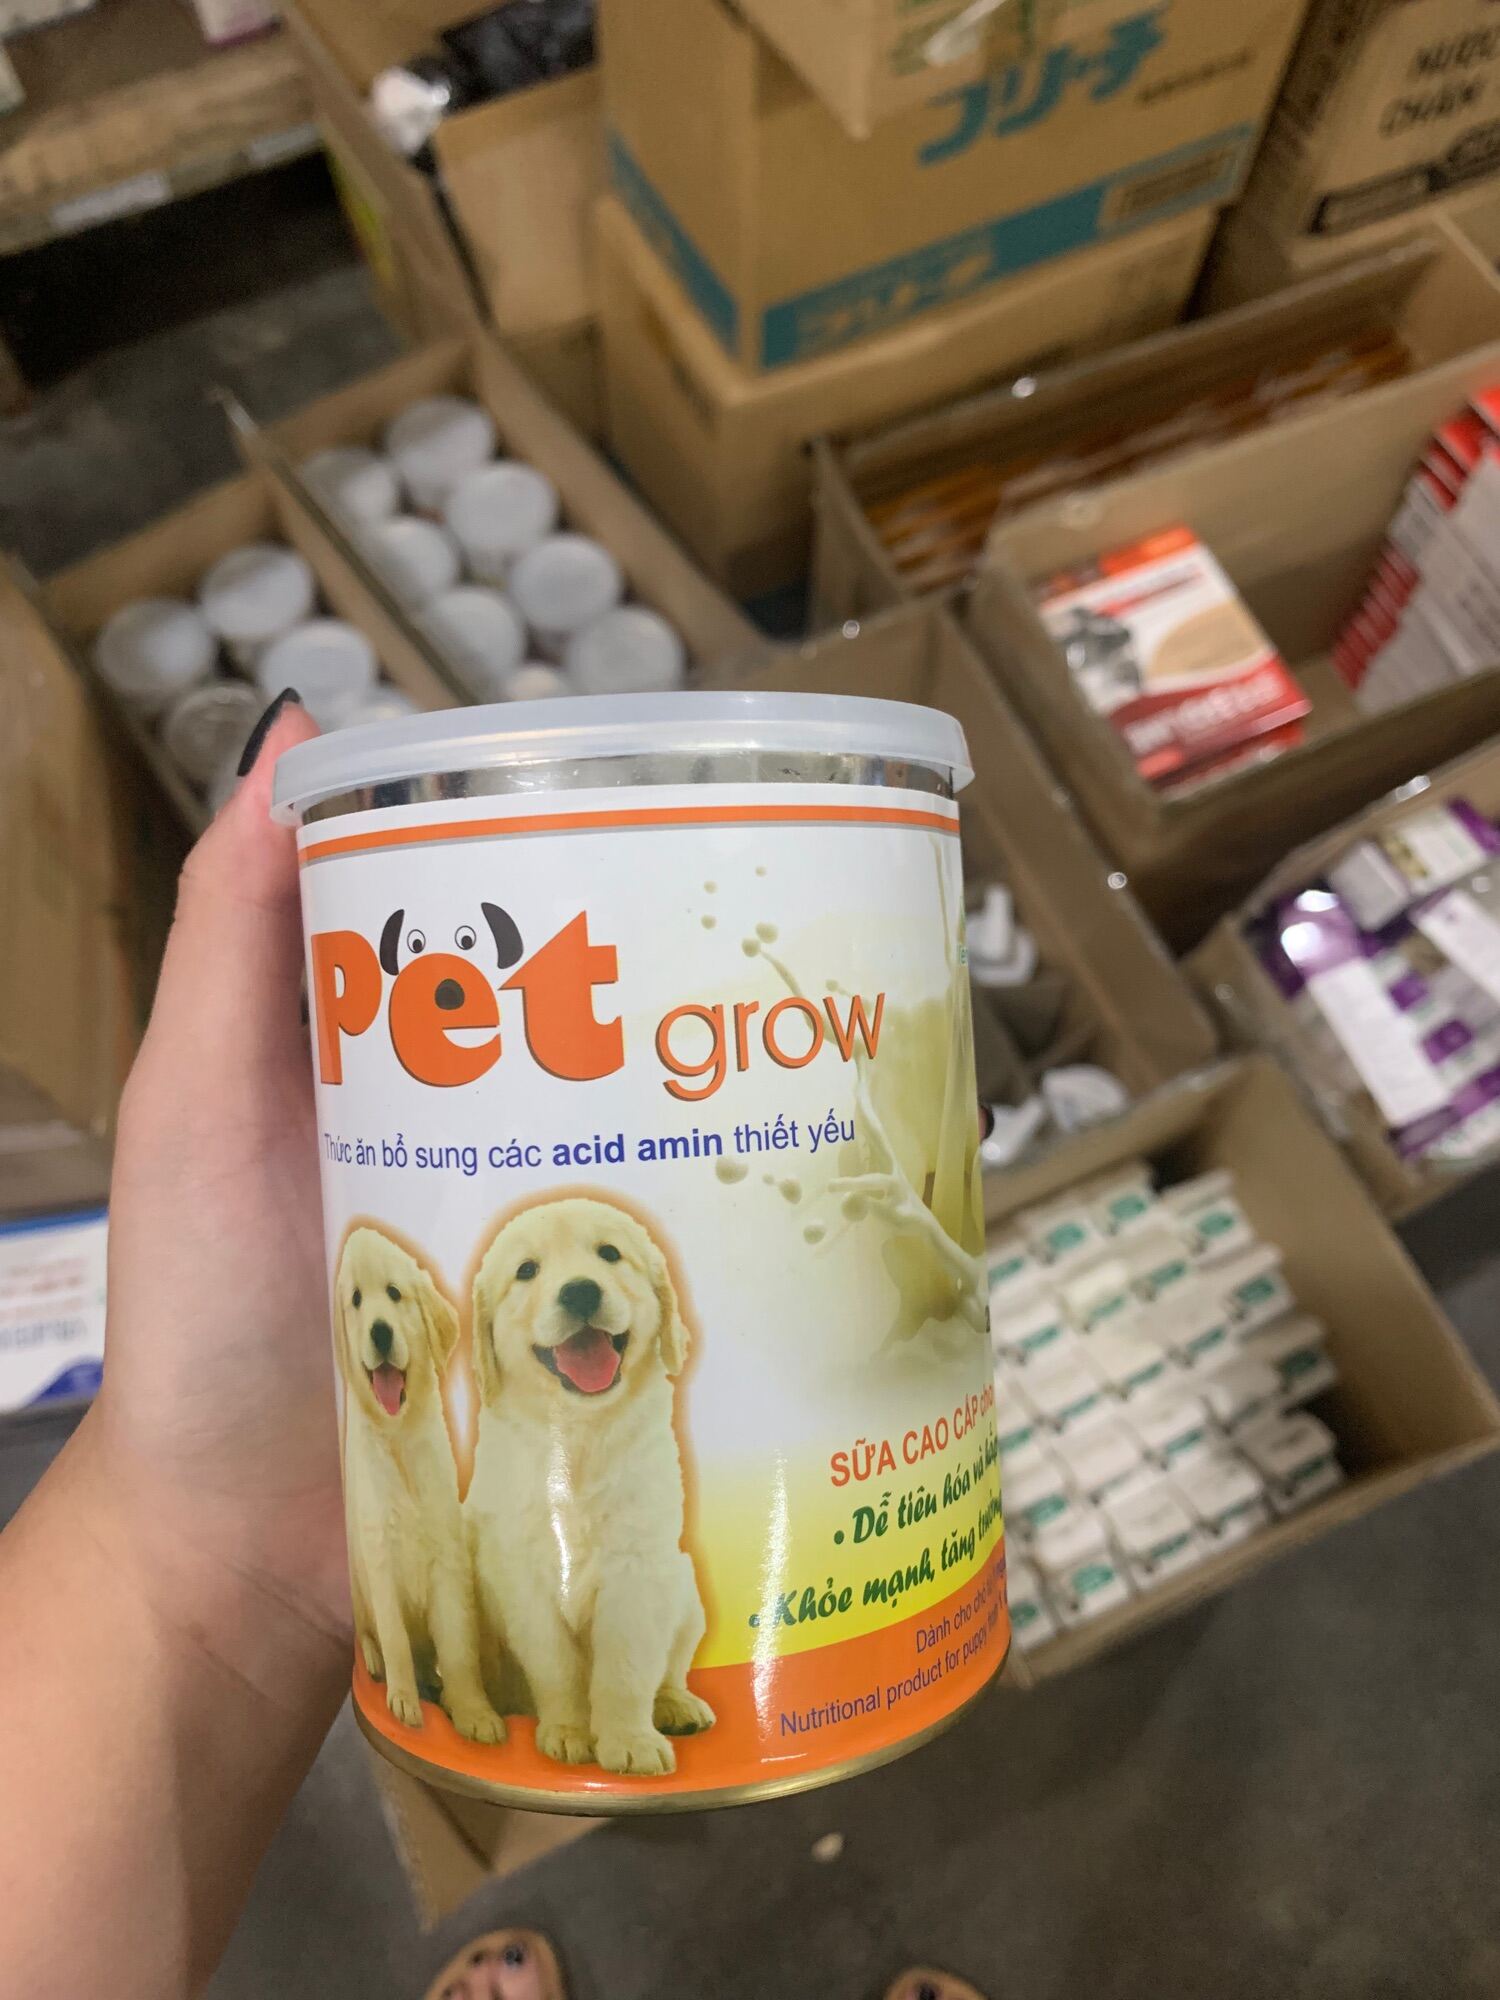 Sữa cho chó Pet Grow Vemedim lon 200gram tối thiểu lượng lactose, tốt cho hệ tiêu hoá của chó con